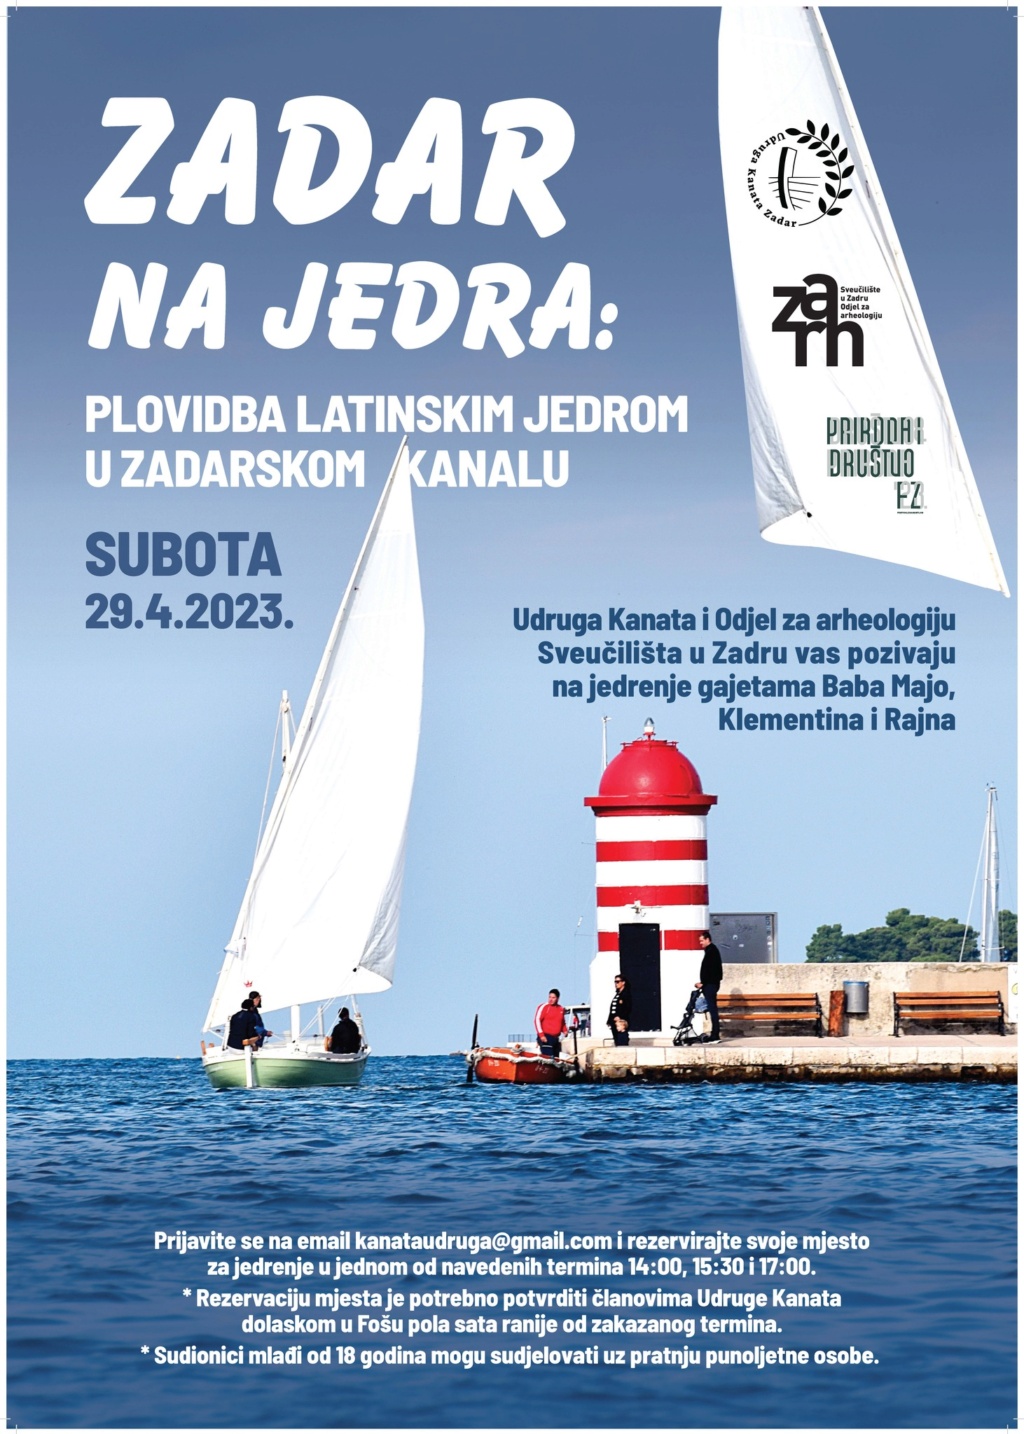 Zadar na jedra: plovidba latinskim jedrom u Zadarskom kanalu - subota 29.04. Kanata10